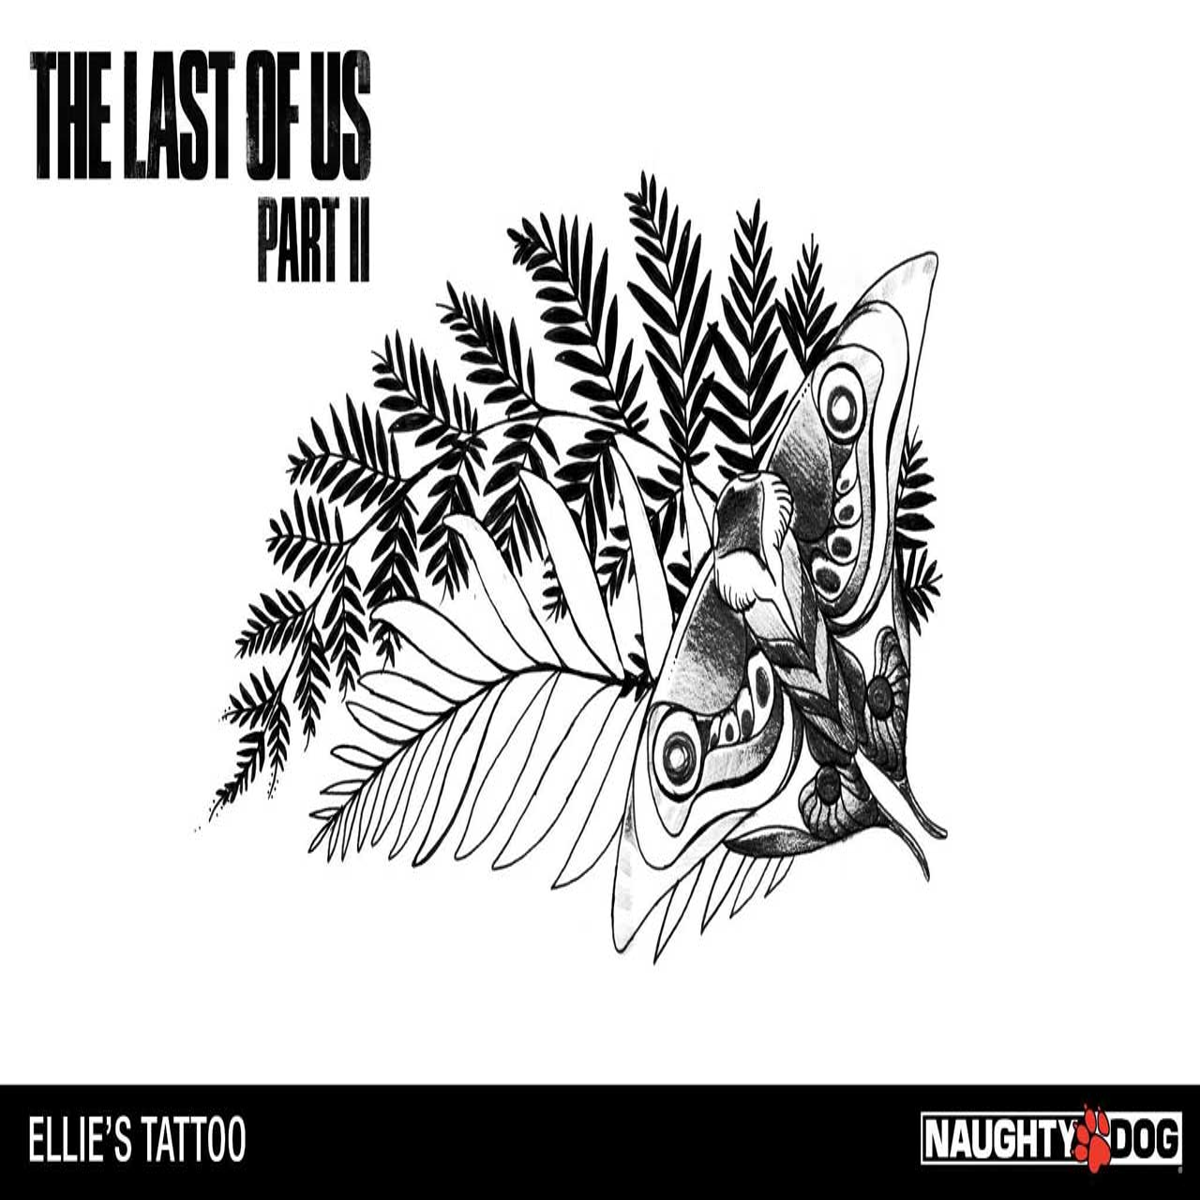 Ellie's Tattoo, Joel, & The Last of Us Part II! 